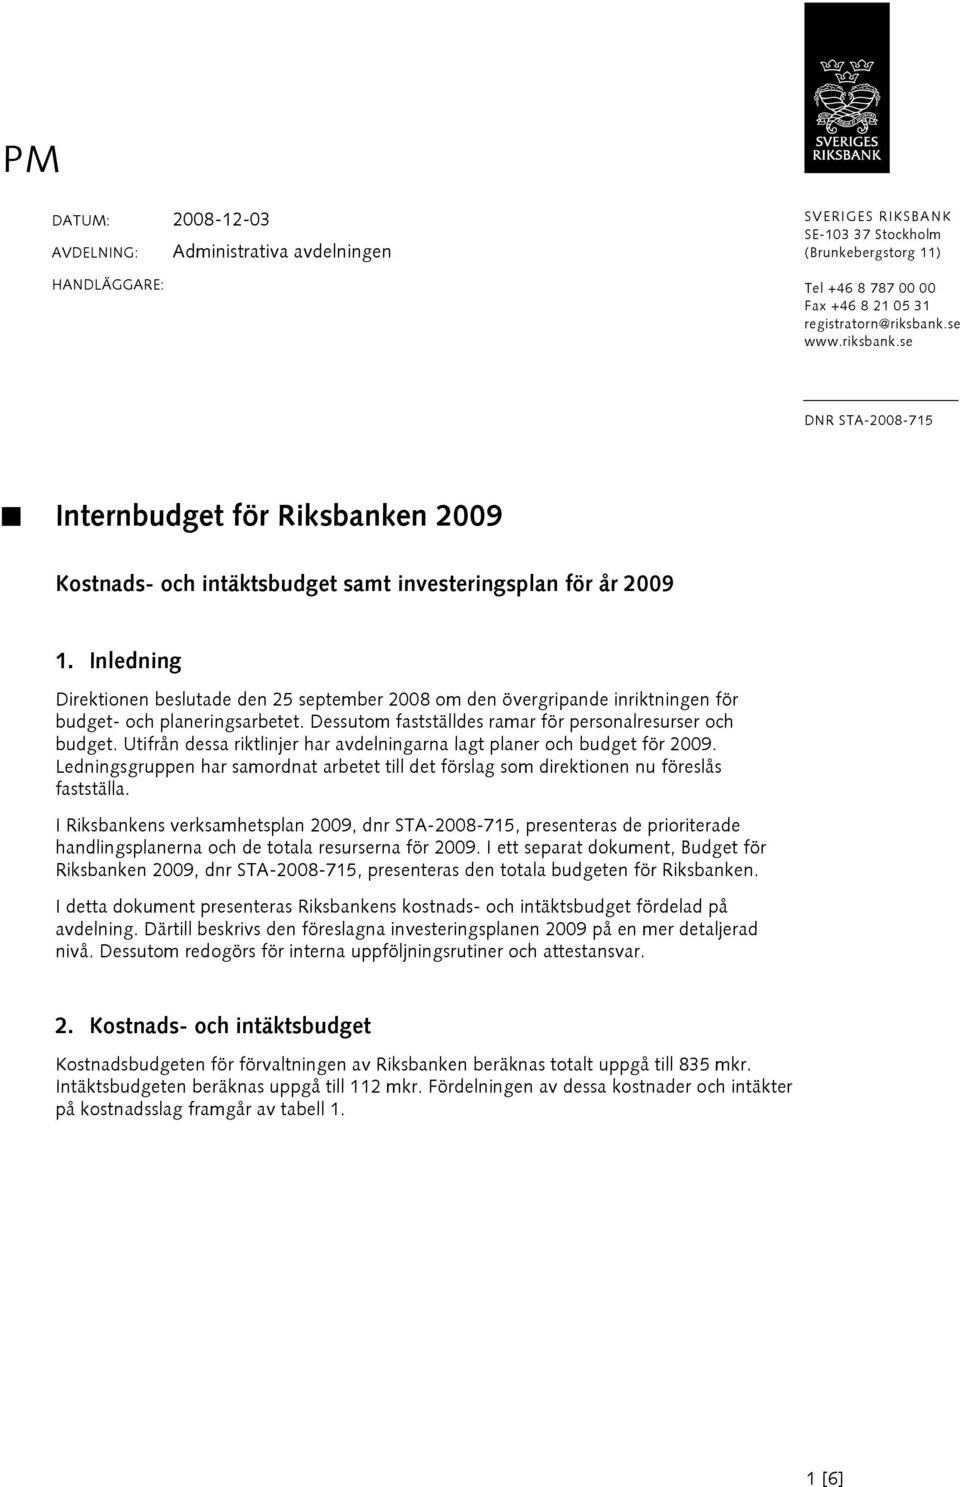 Inledning Direktionen beslutade den 25 september 2008 om den övergripande inriktningen för budget- och planeringsarbetet. Dessutom fastställdes ramar för personalresurser och budget.